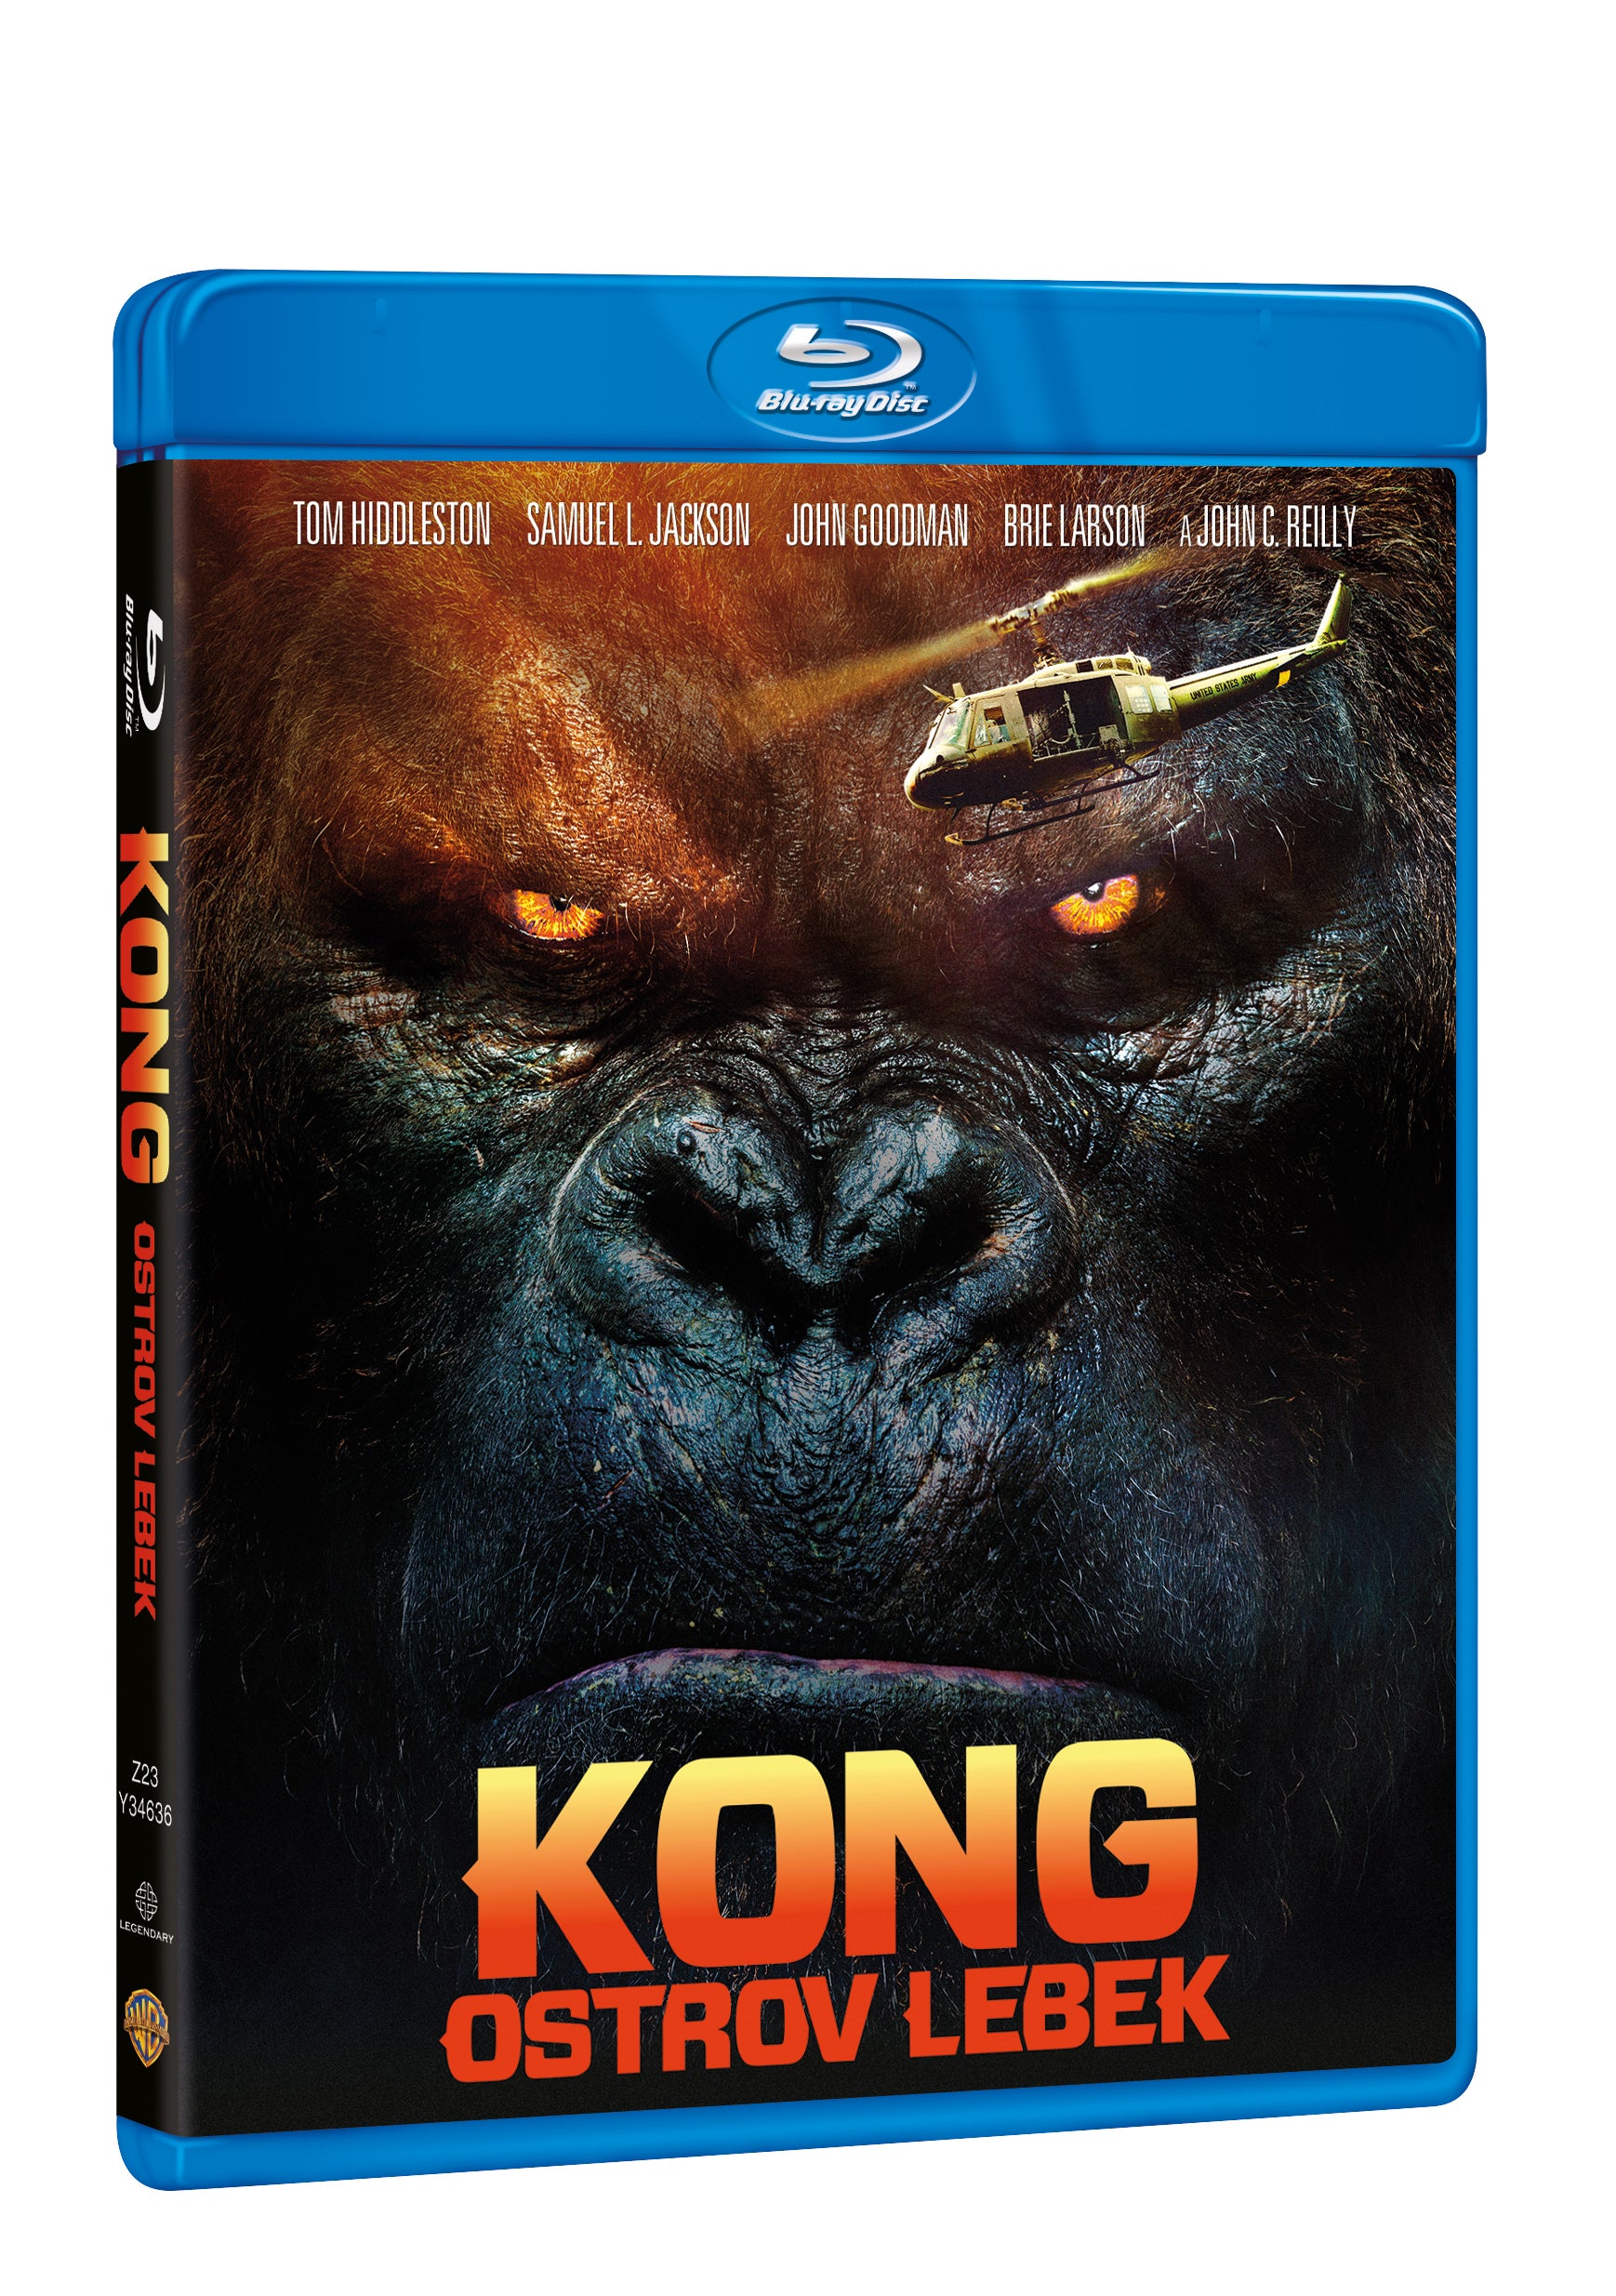 Kong: Ostrov lebek BD / Kong: Skull Island - Czech version